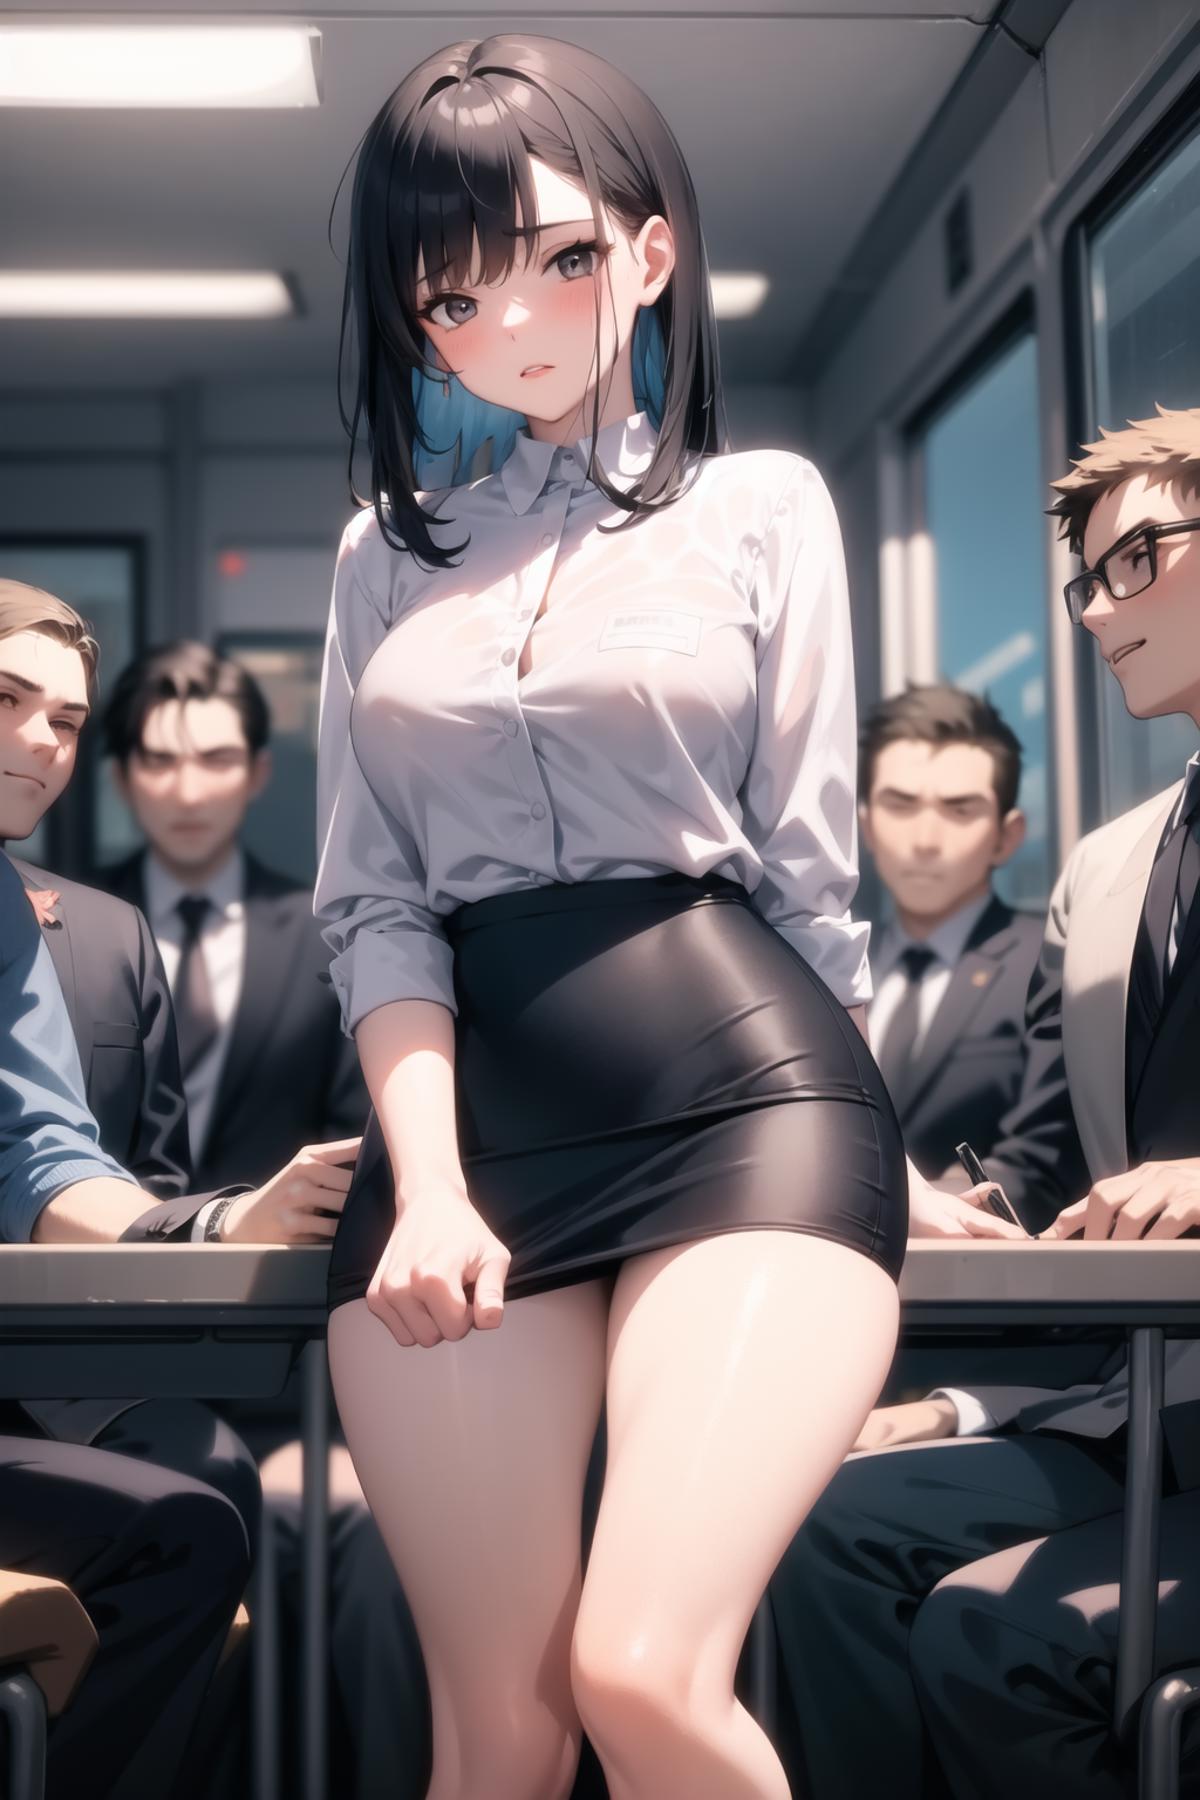 Hassaku (hentai model) image by psoft